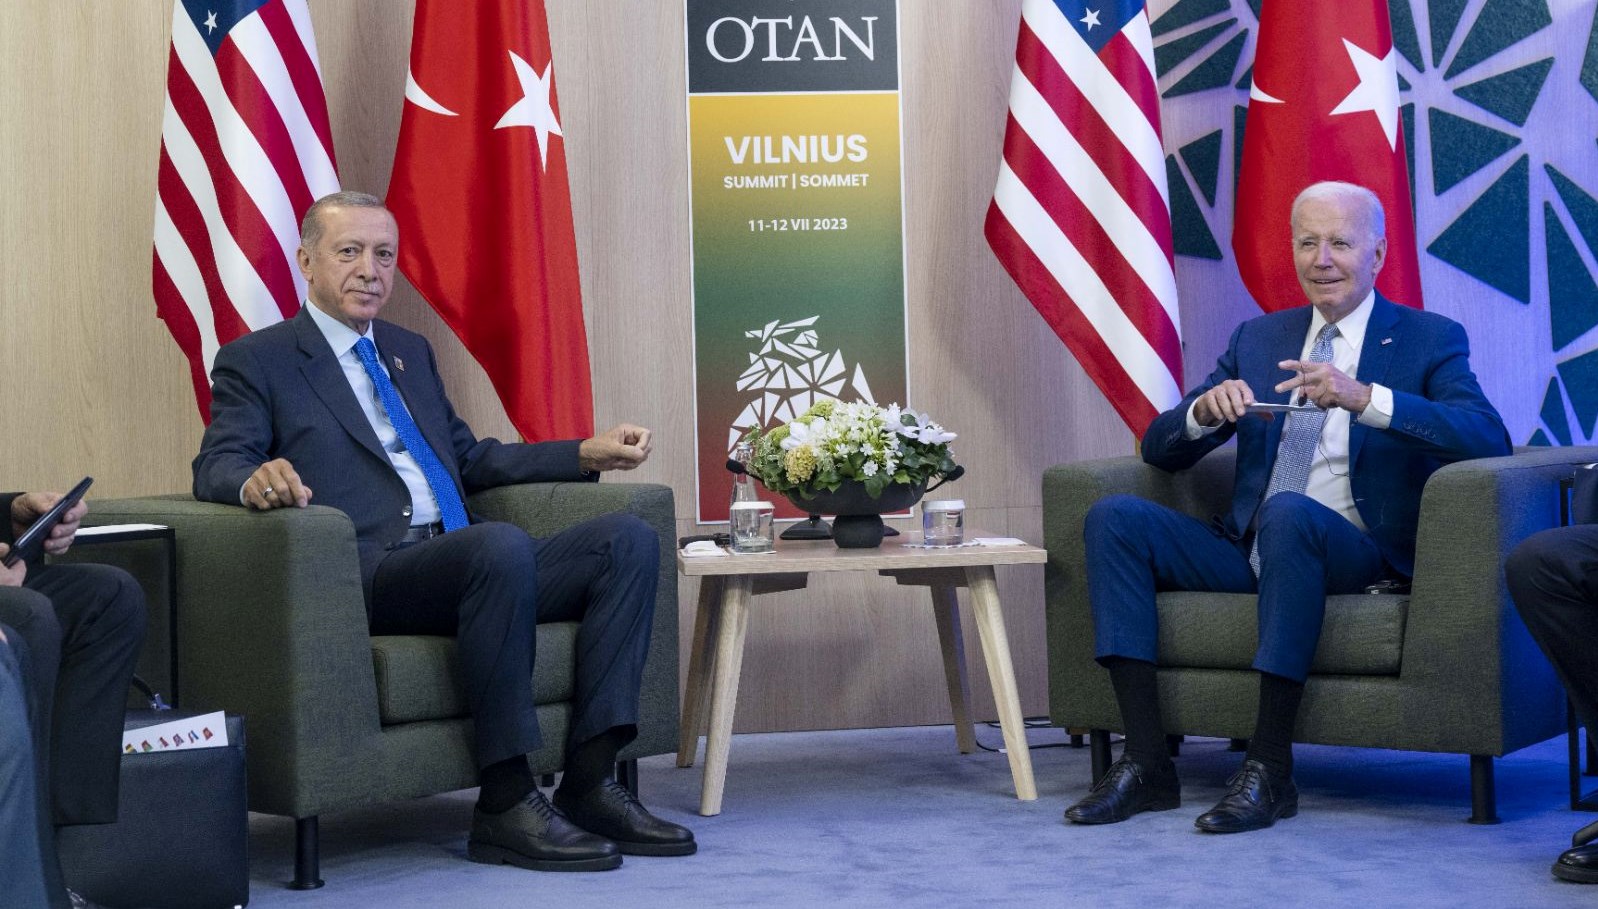 SON DAKİKA HABERİ: Erdoğan-Biden görüşmesinde hangi bahisler konuşuldu